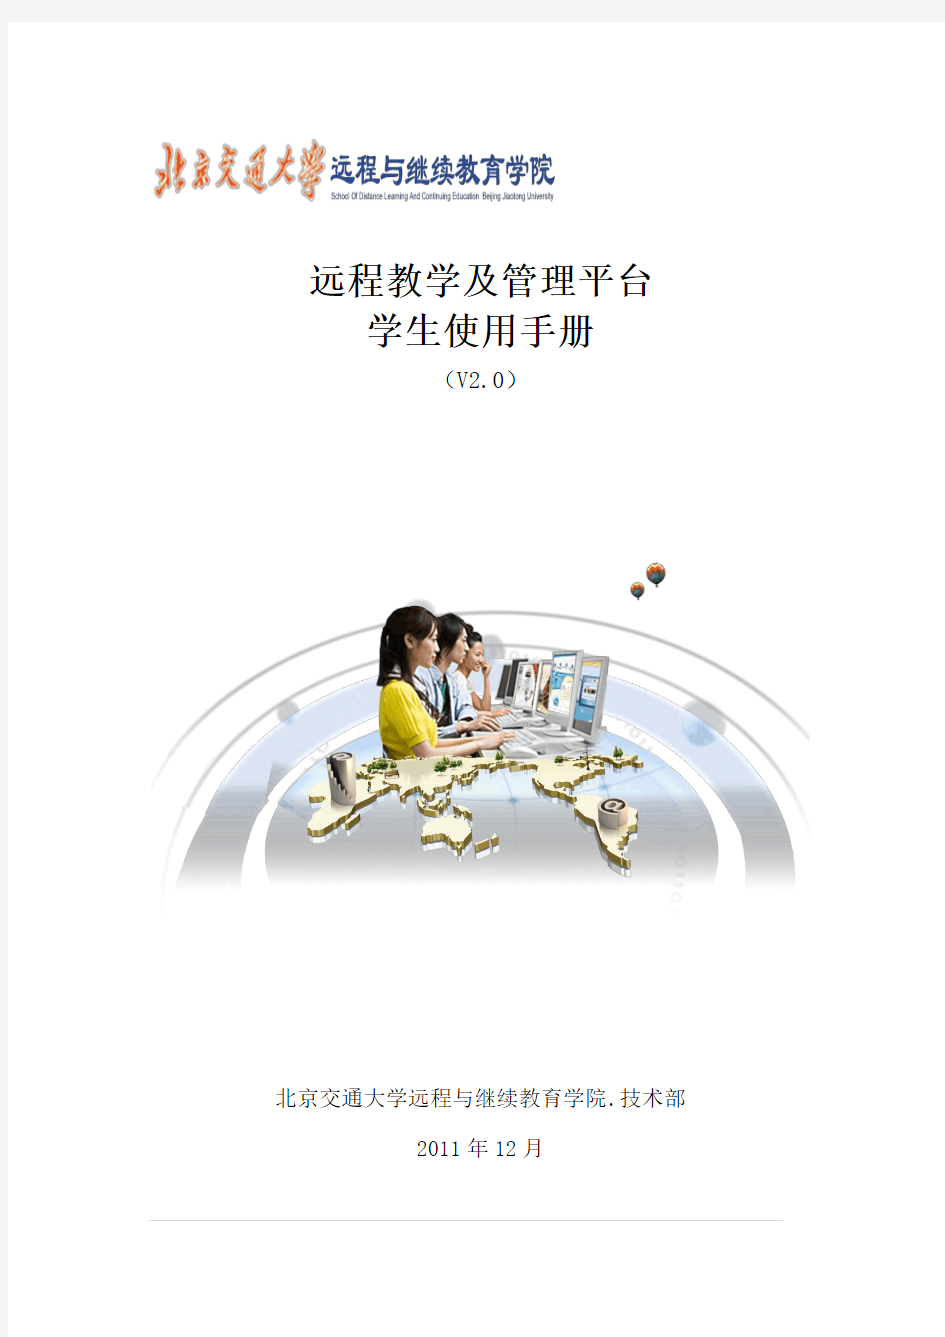 远程教学及管理平台学生使用手册-北京交通大学-远程与继续教育学院